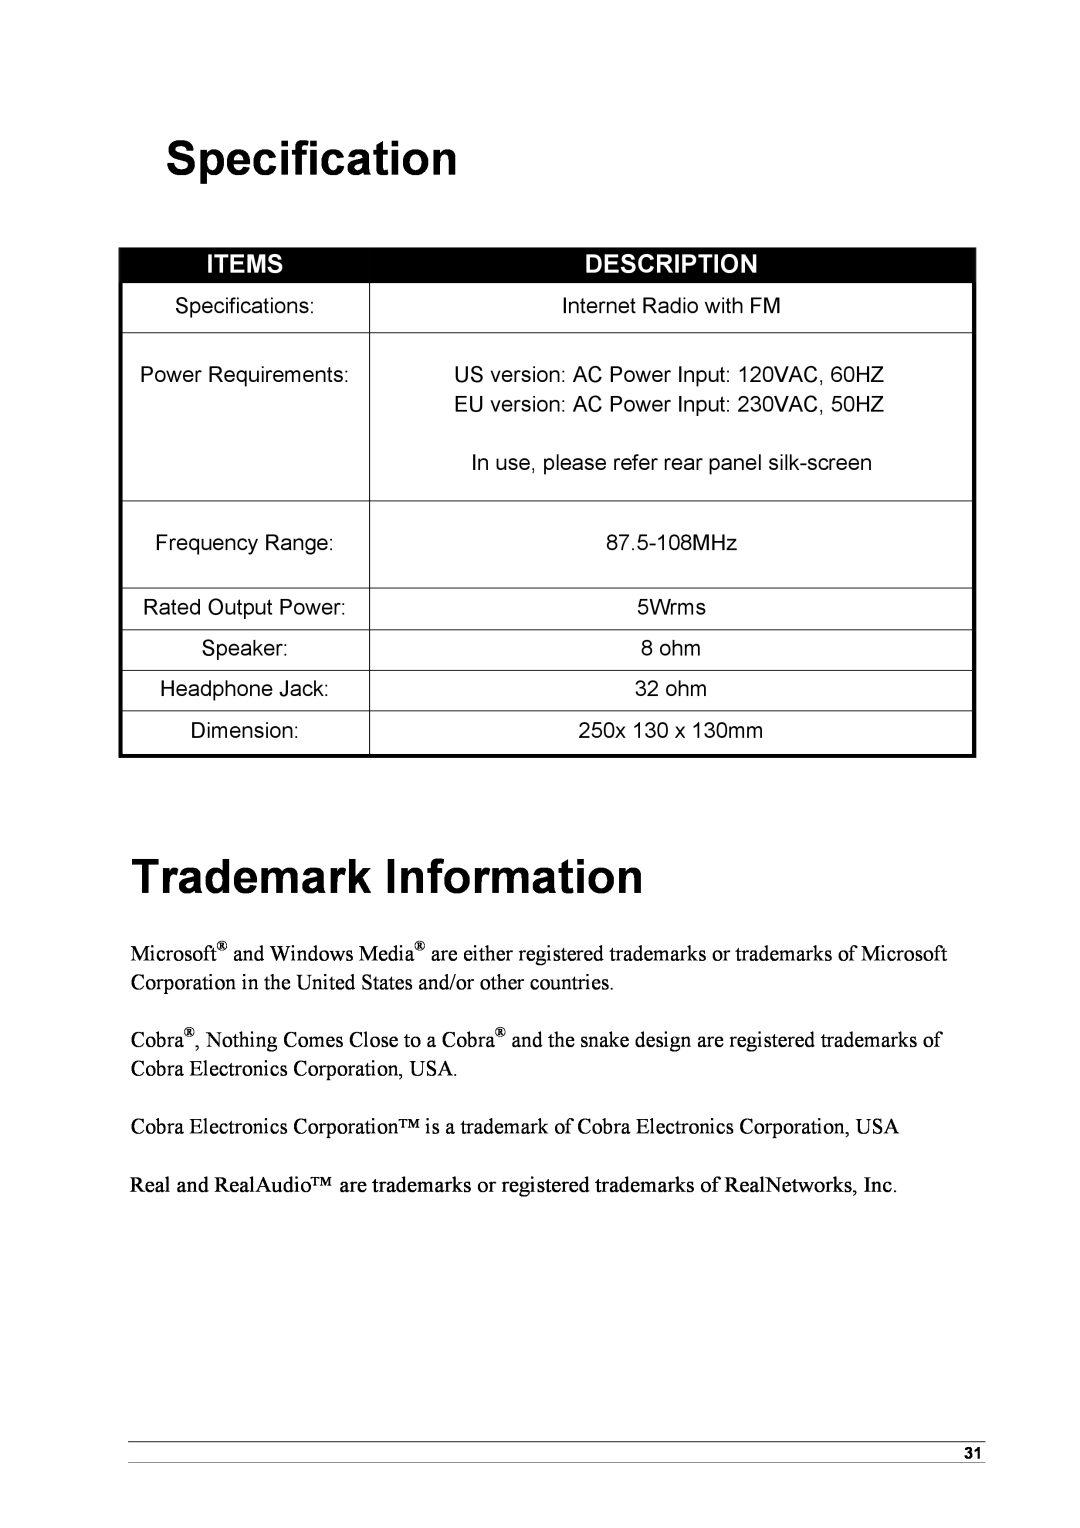 Cobra Electronics CIR 1000 E, CIR 1000 A manual Specification, Trademark Information, Items, Description 